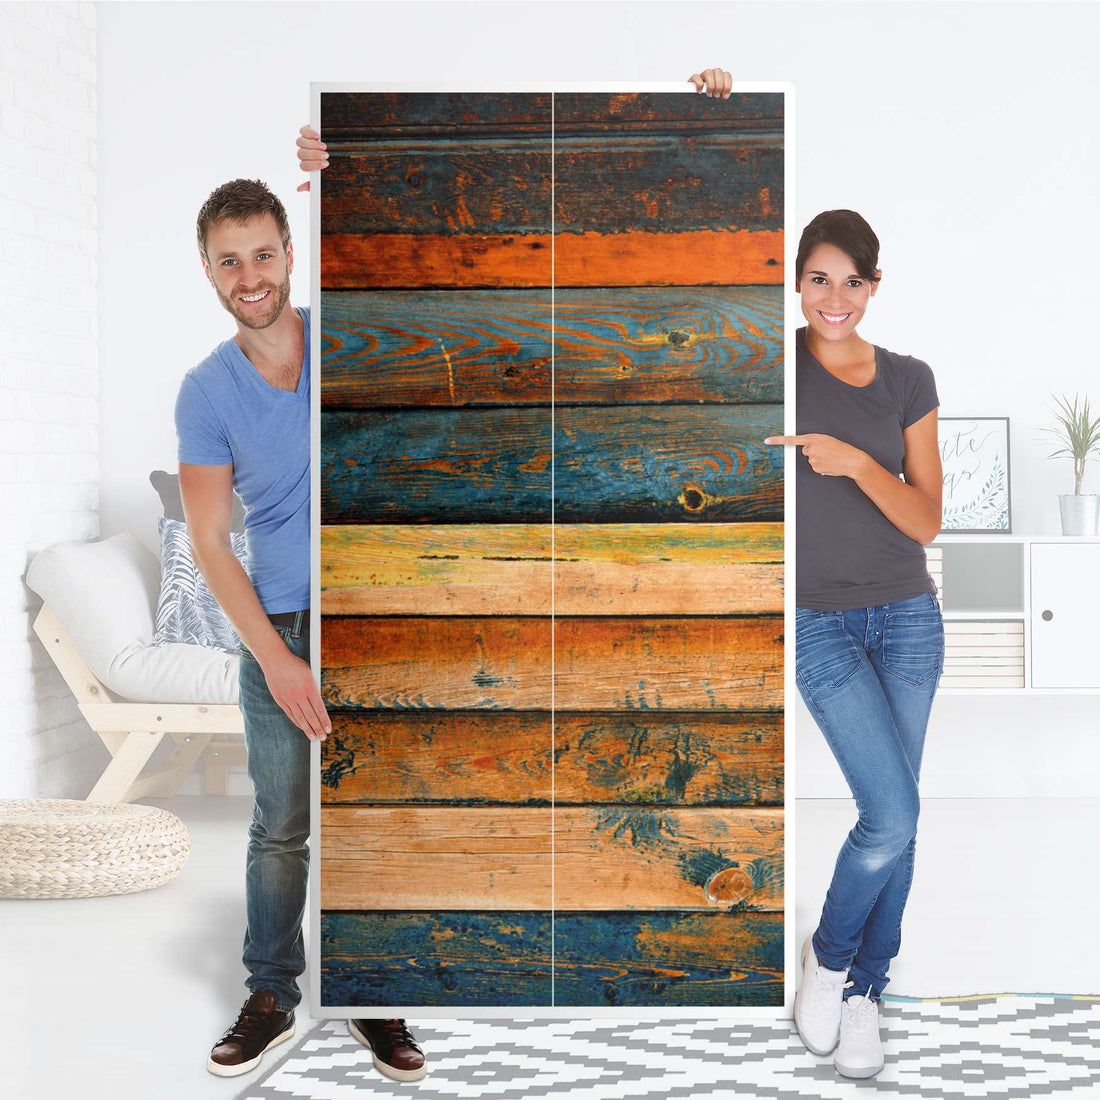 Klebefolie für Möbel Wooden - IKEA Pax Schrank 201 cm Höhe - 2 Türen - Folie